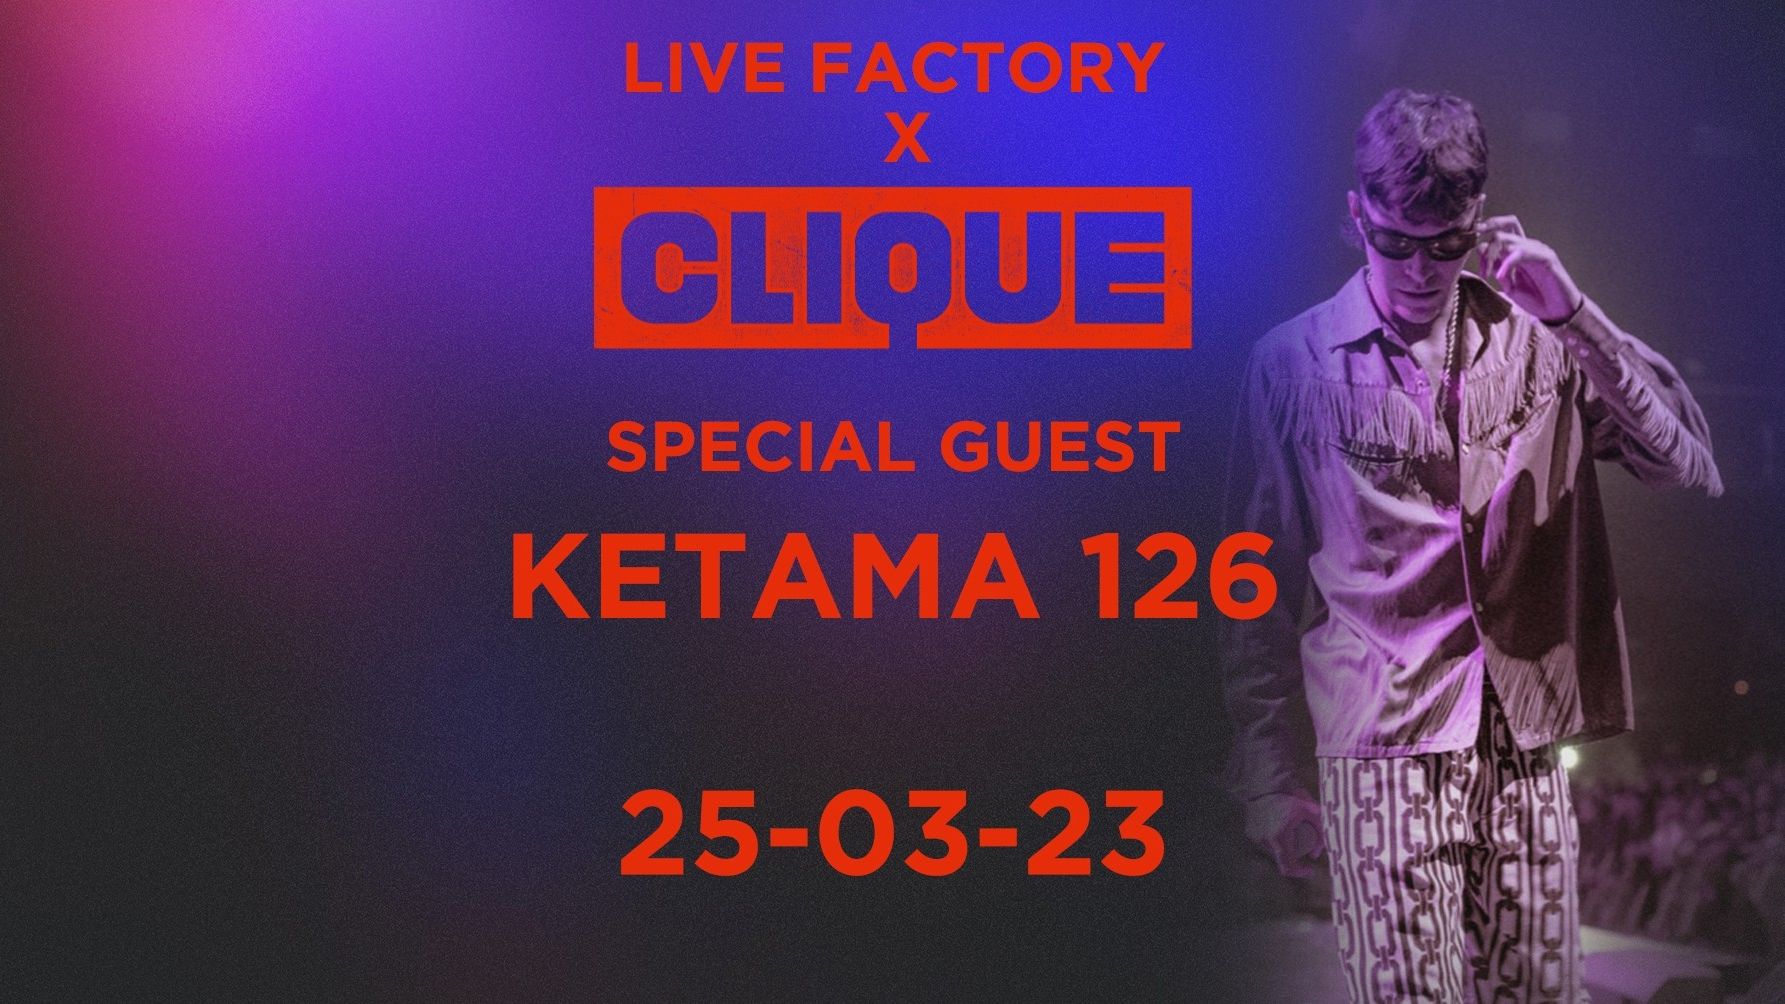 Live Factory x Clique - Special guest Ketama 126